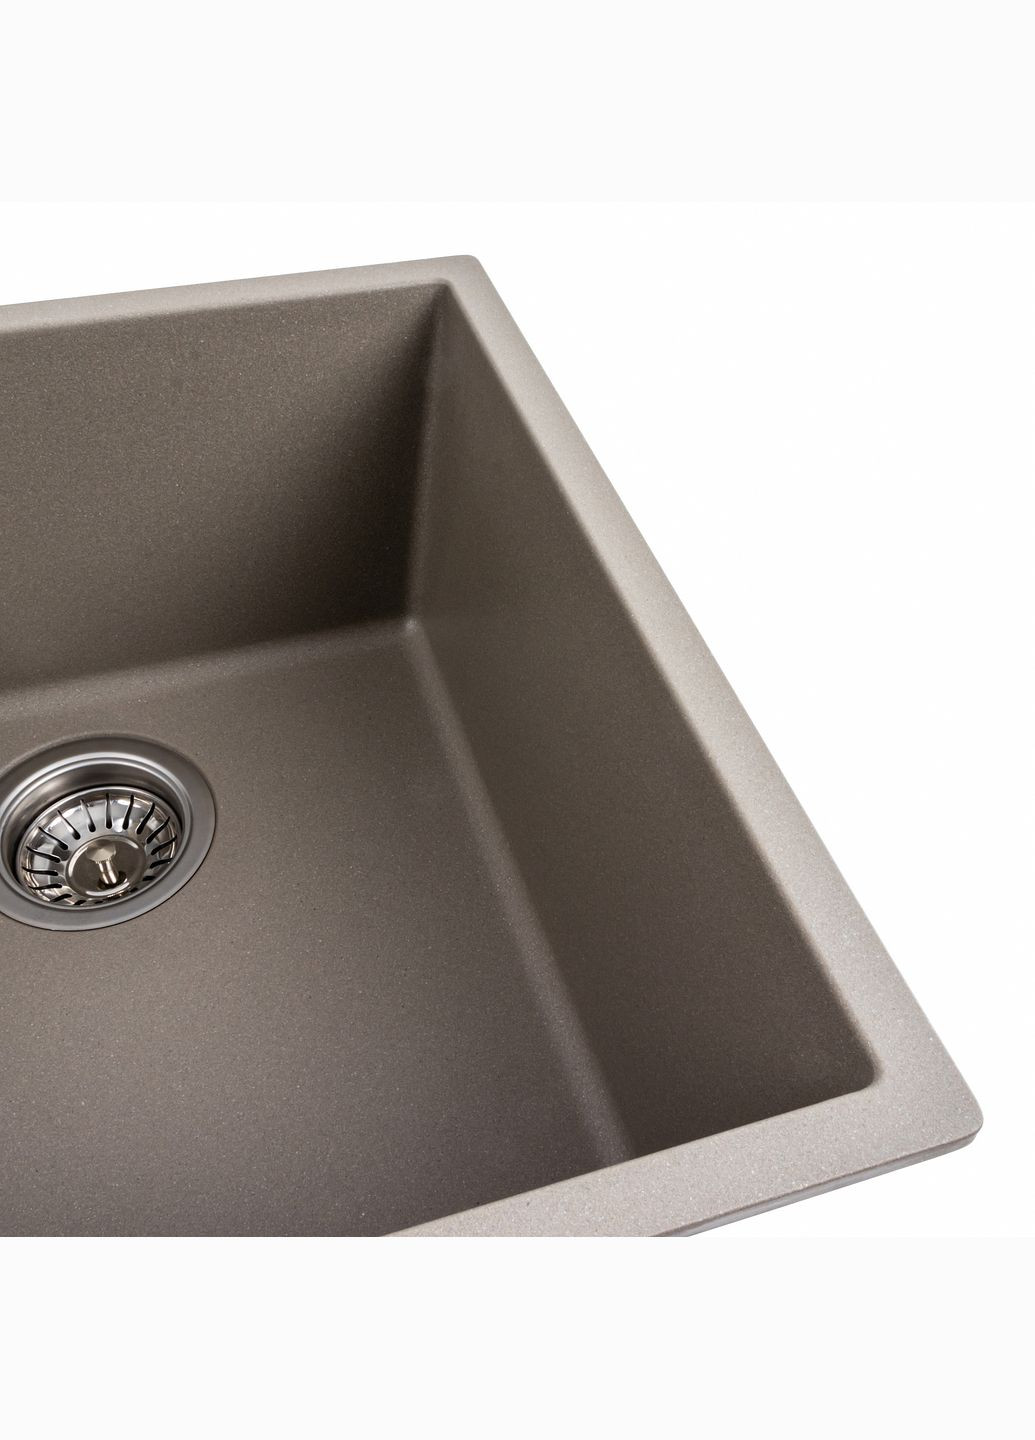 Гранітна мийка для кухні 4040 RUBA матовий титан Platinum (269795718)